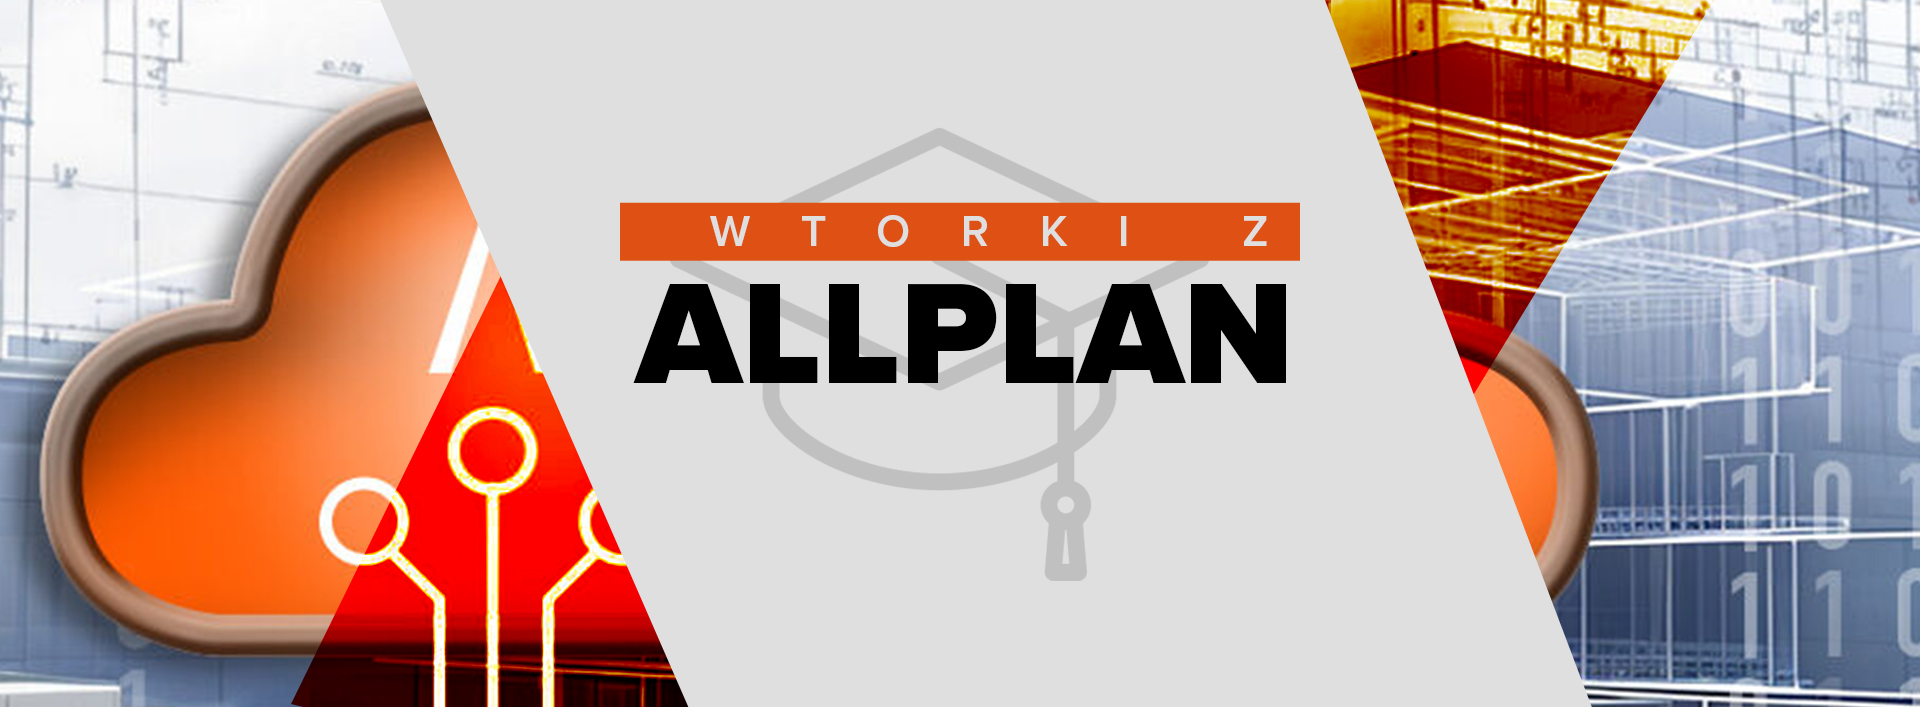 Serdecznie zapraszamy na kolejne wydarzenie online z serii „Wtorki z Allplanem”!